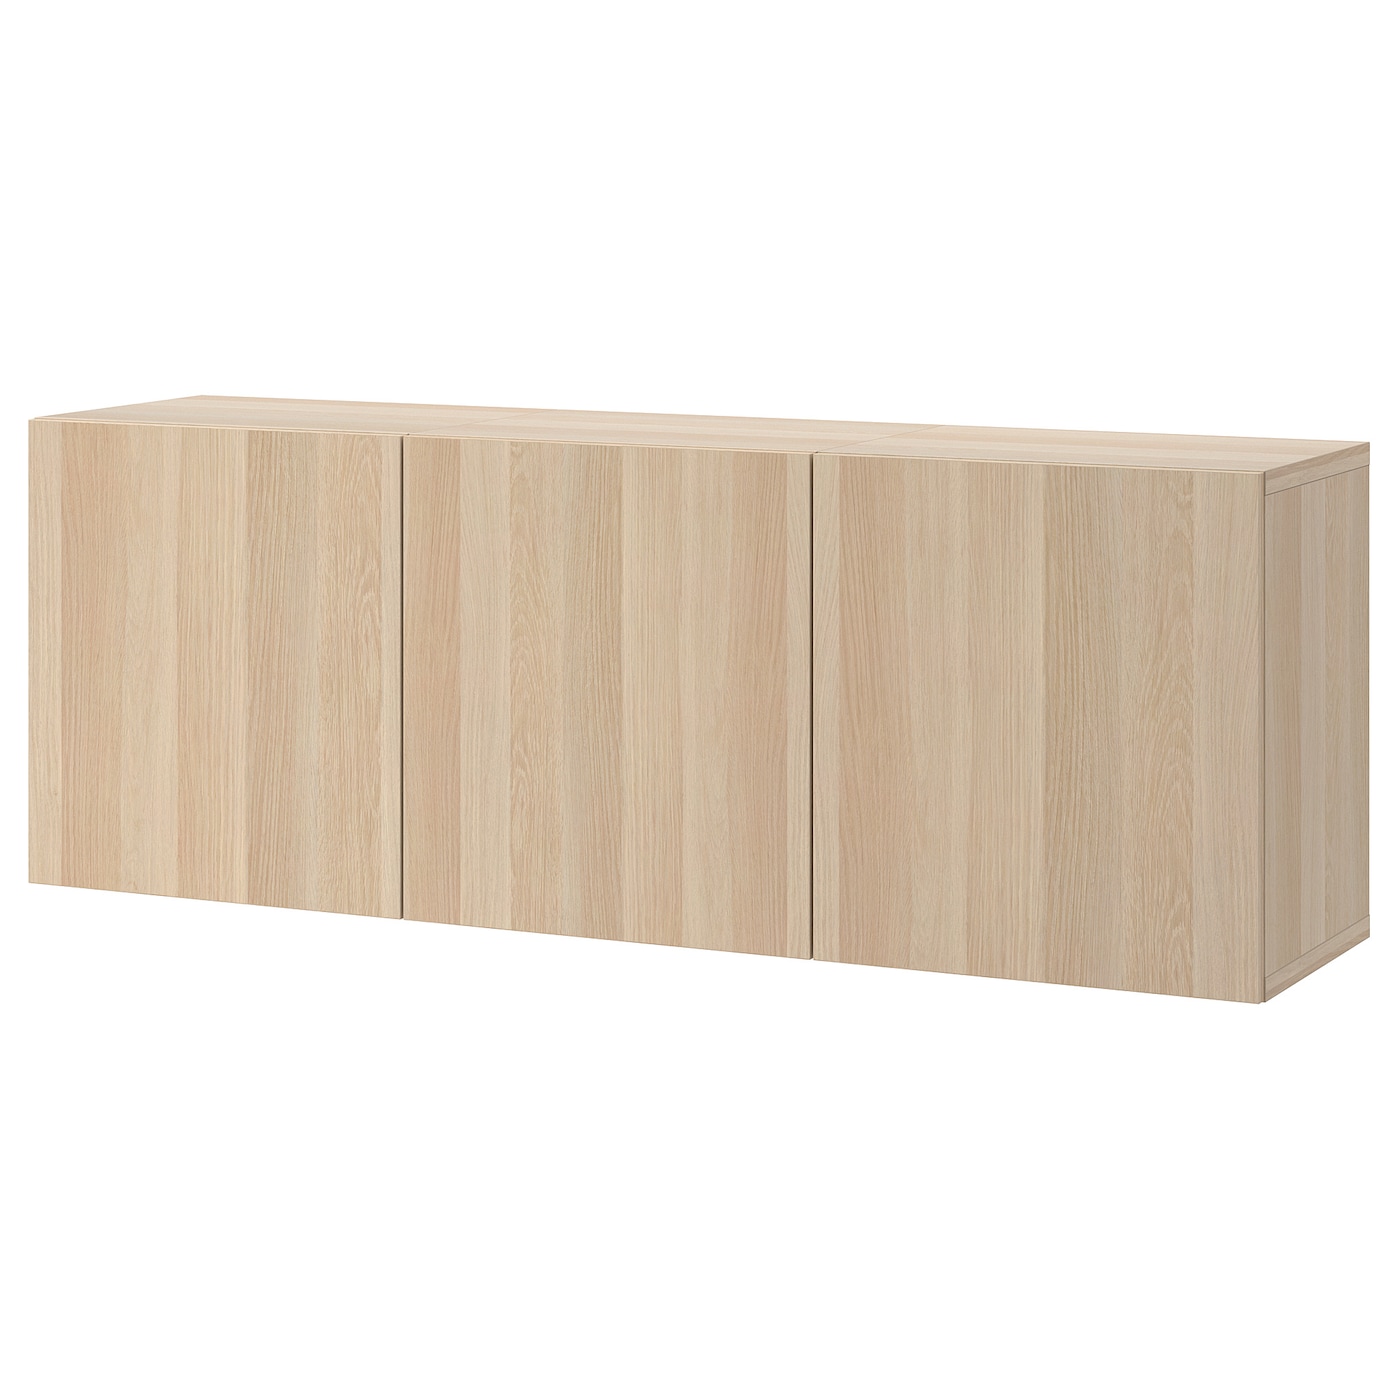 Навесной шкаф - IKEA BESTÅ/BESTA, 180x42x64 см, коричневый, БЕСТО ИКЕА